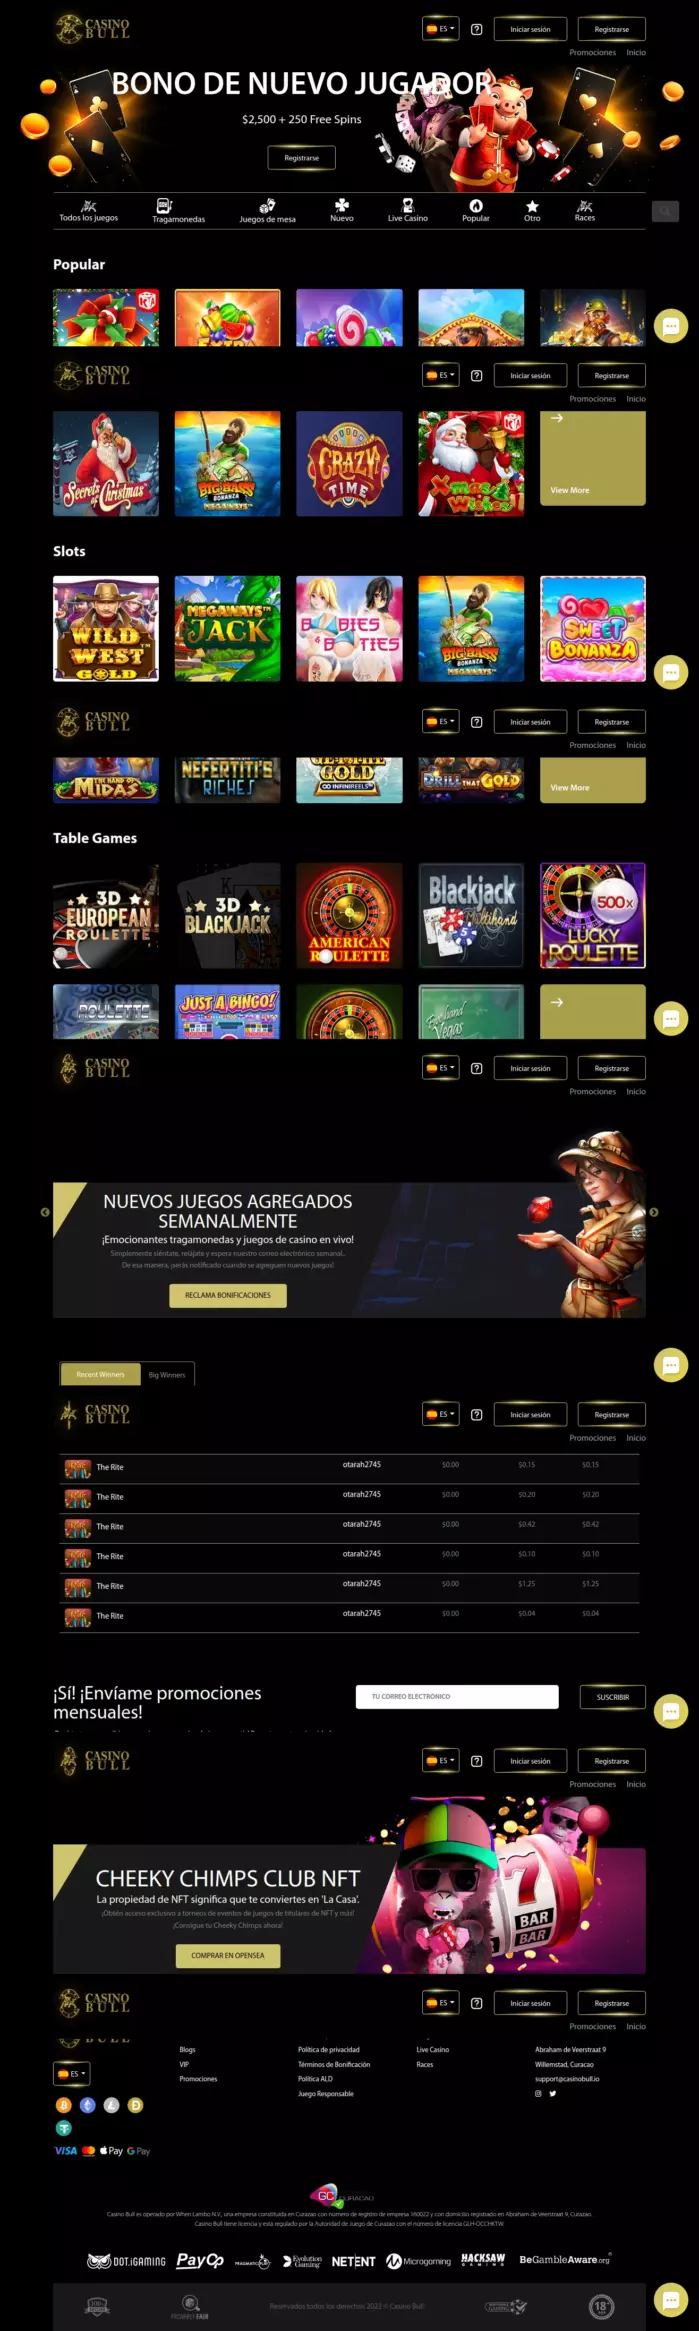 Casino Bull Reseña Completa en Español